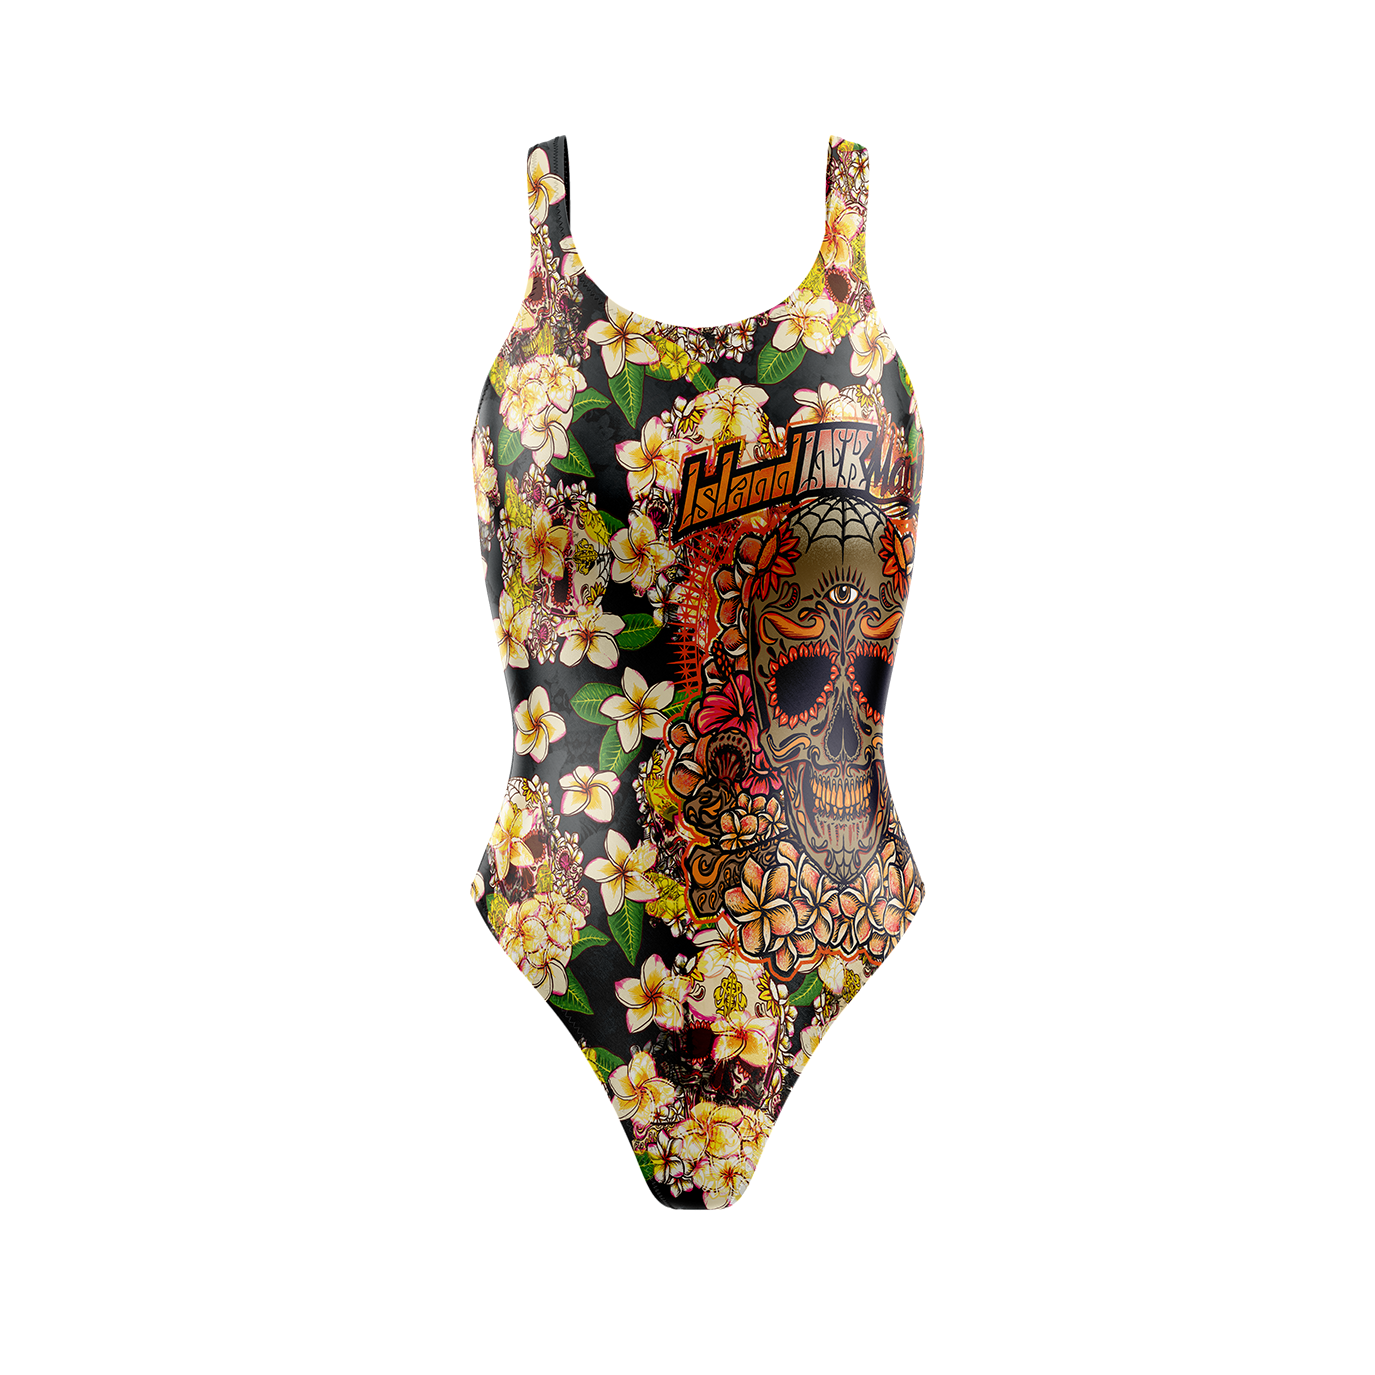 Women's Plumeria Skull high cut one piece swim suit